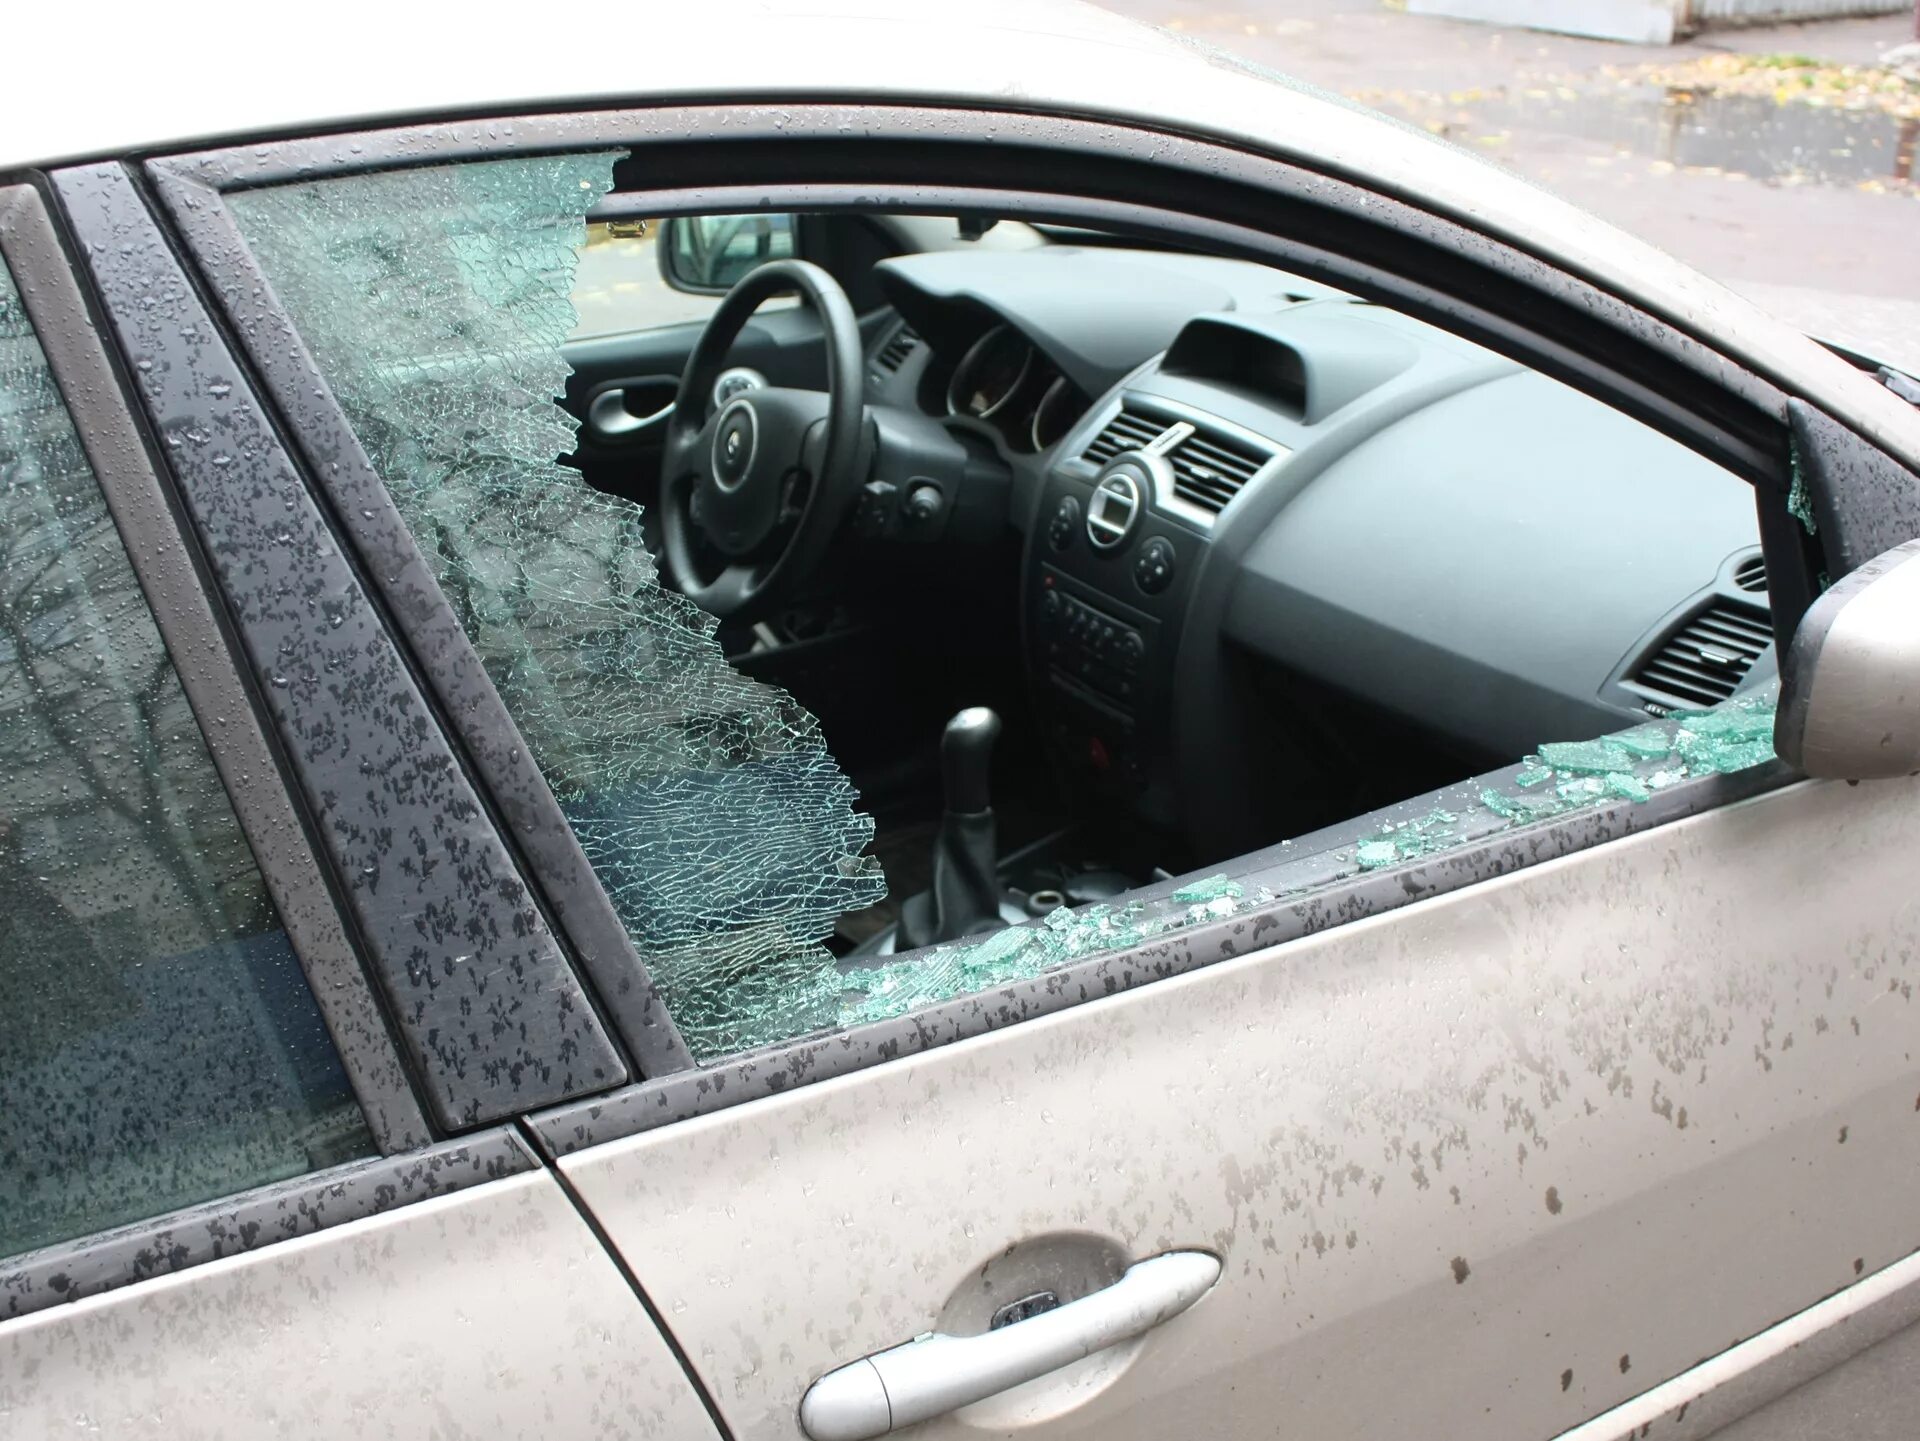 Разбили окно машины. Разбитое боковое стекло автомобиля. Разбитое окно машины. Разбил окно в машине. Разбивает стекло авто.